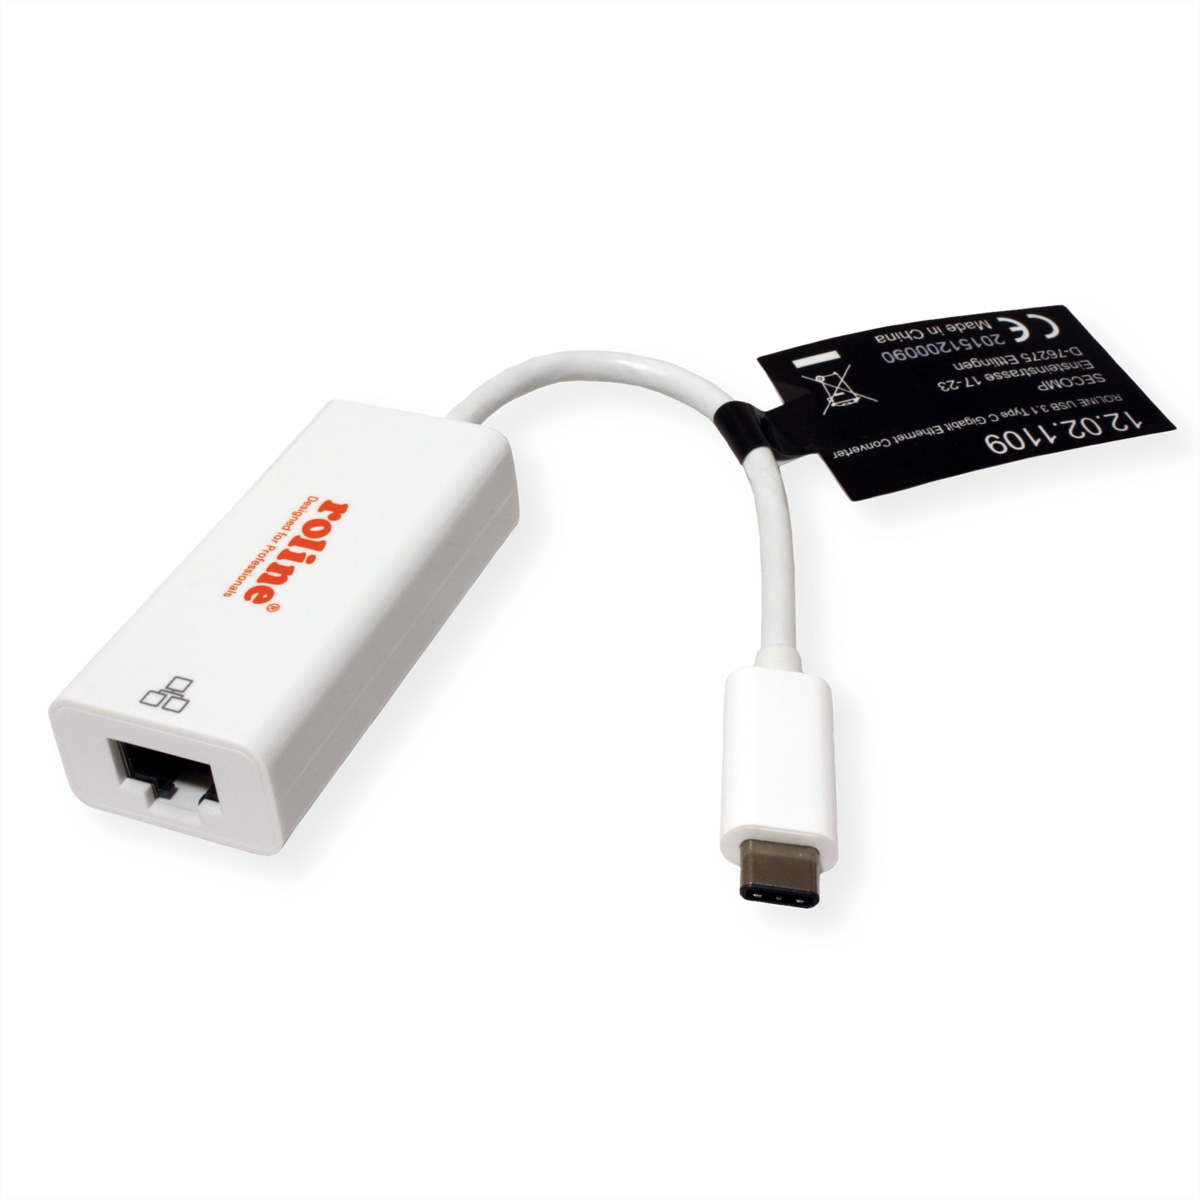 Gigabit ROLINE Gigabit Gen USB Konverter Ethernet Ethernet 2 3.2 Konverter zu